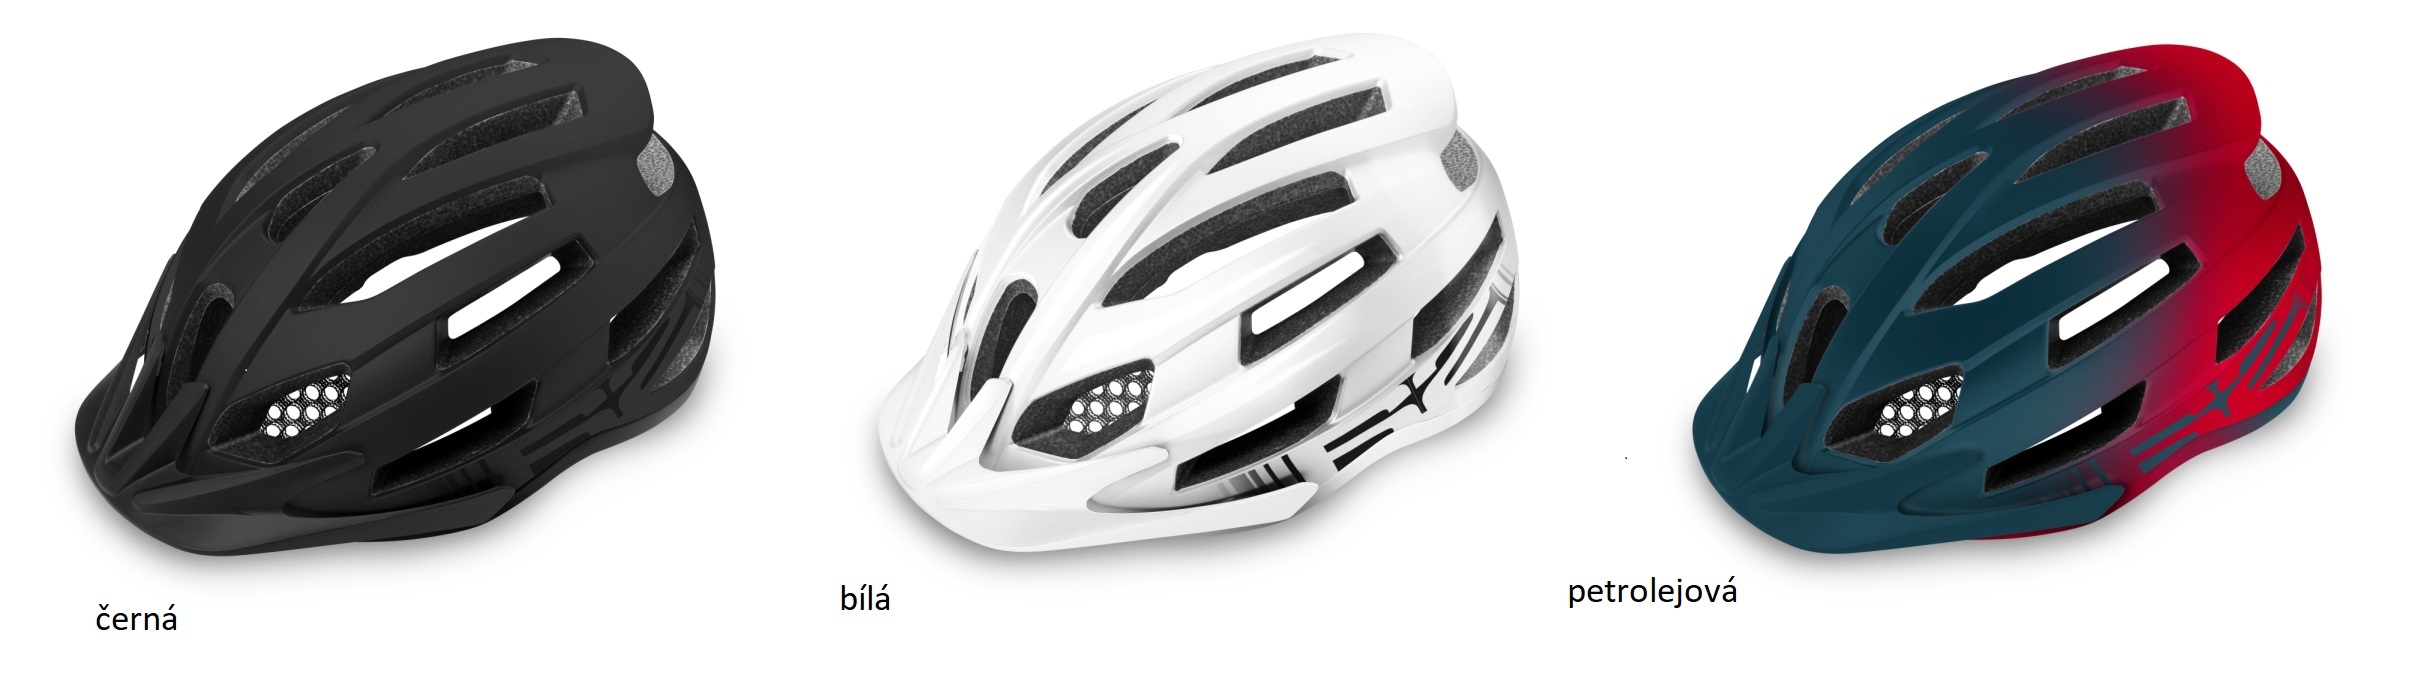 Náhradní štítek cyklistické helmy ATH33 - mix barev